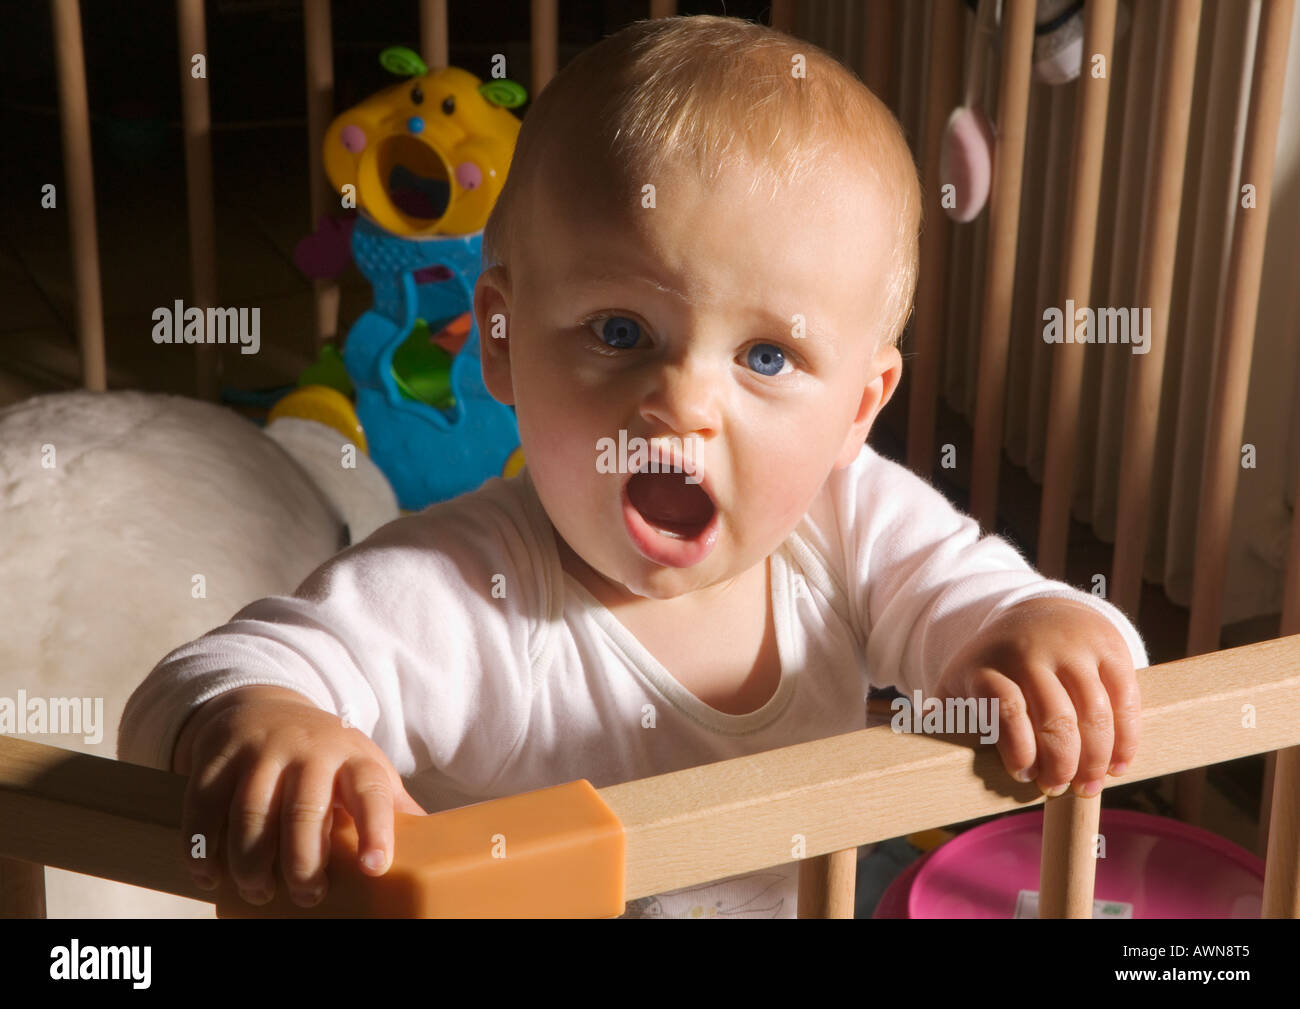 1 Jahr alt Baby junge im Laufstall animiert Stockfotografie - Alamy